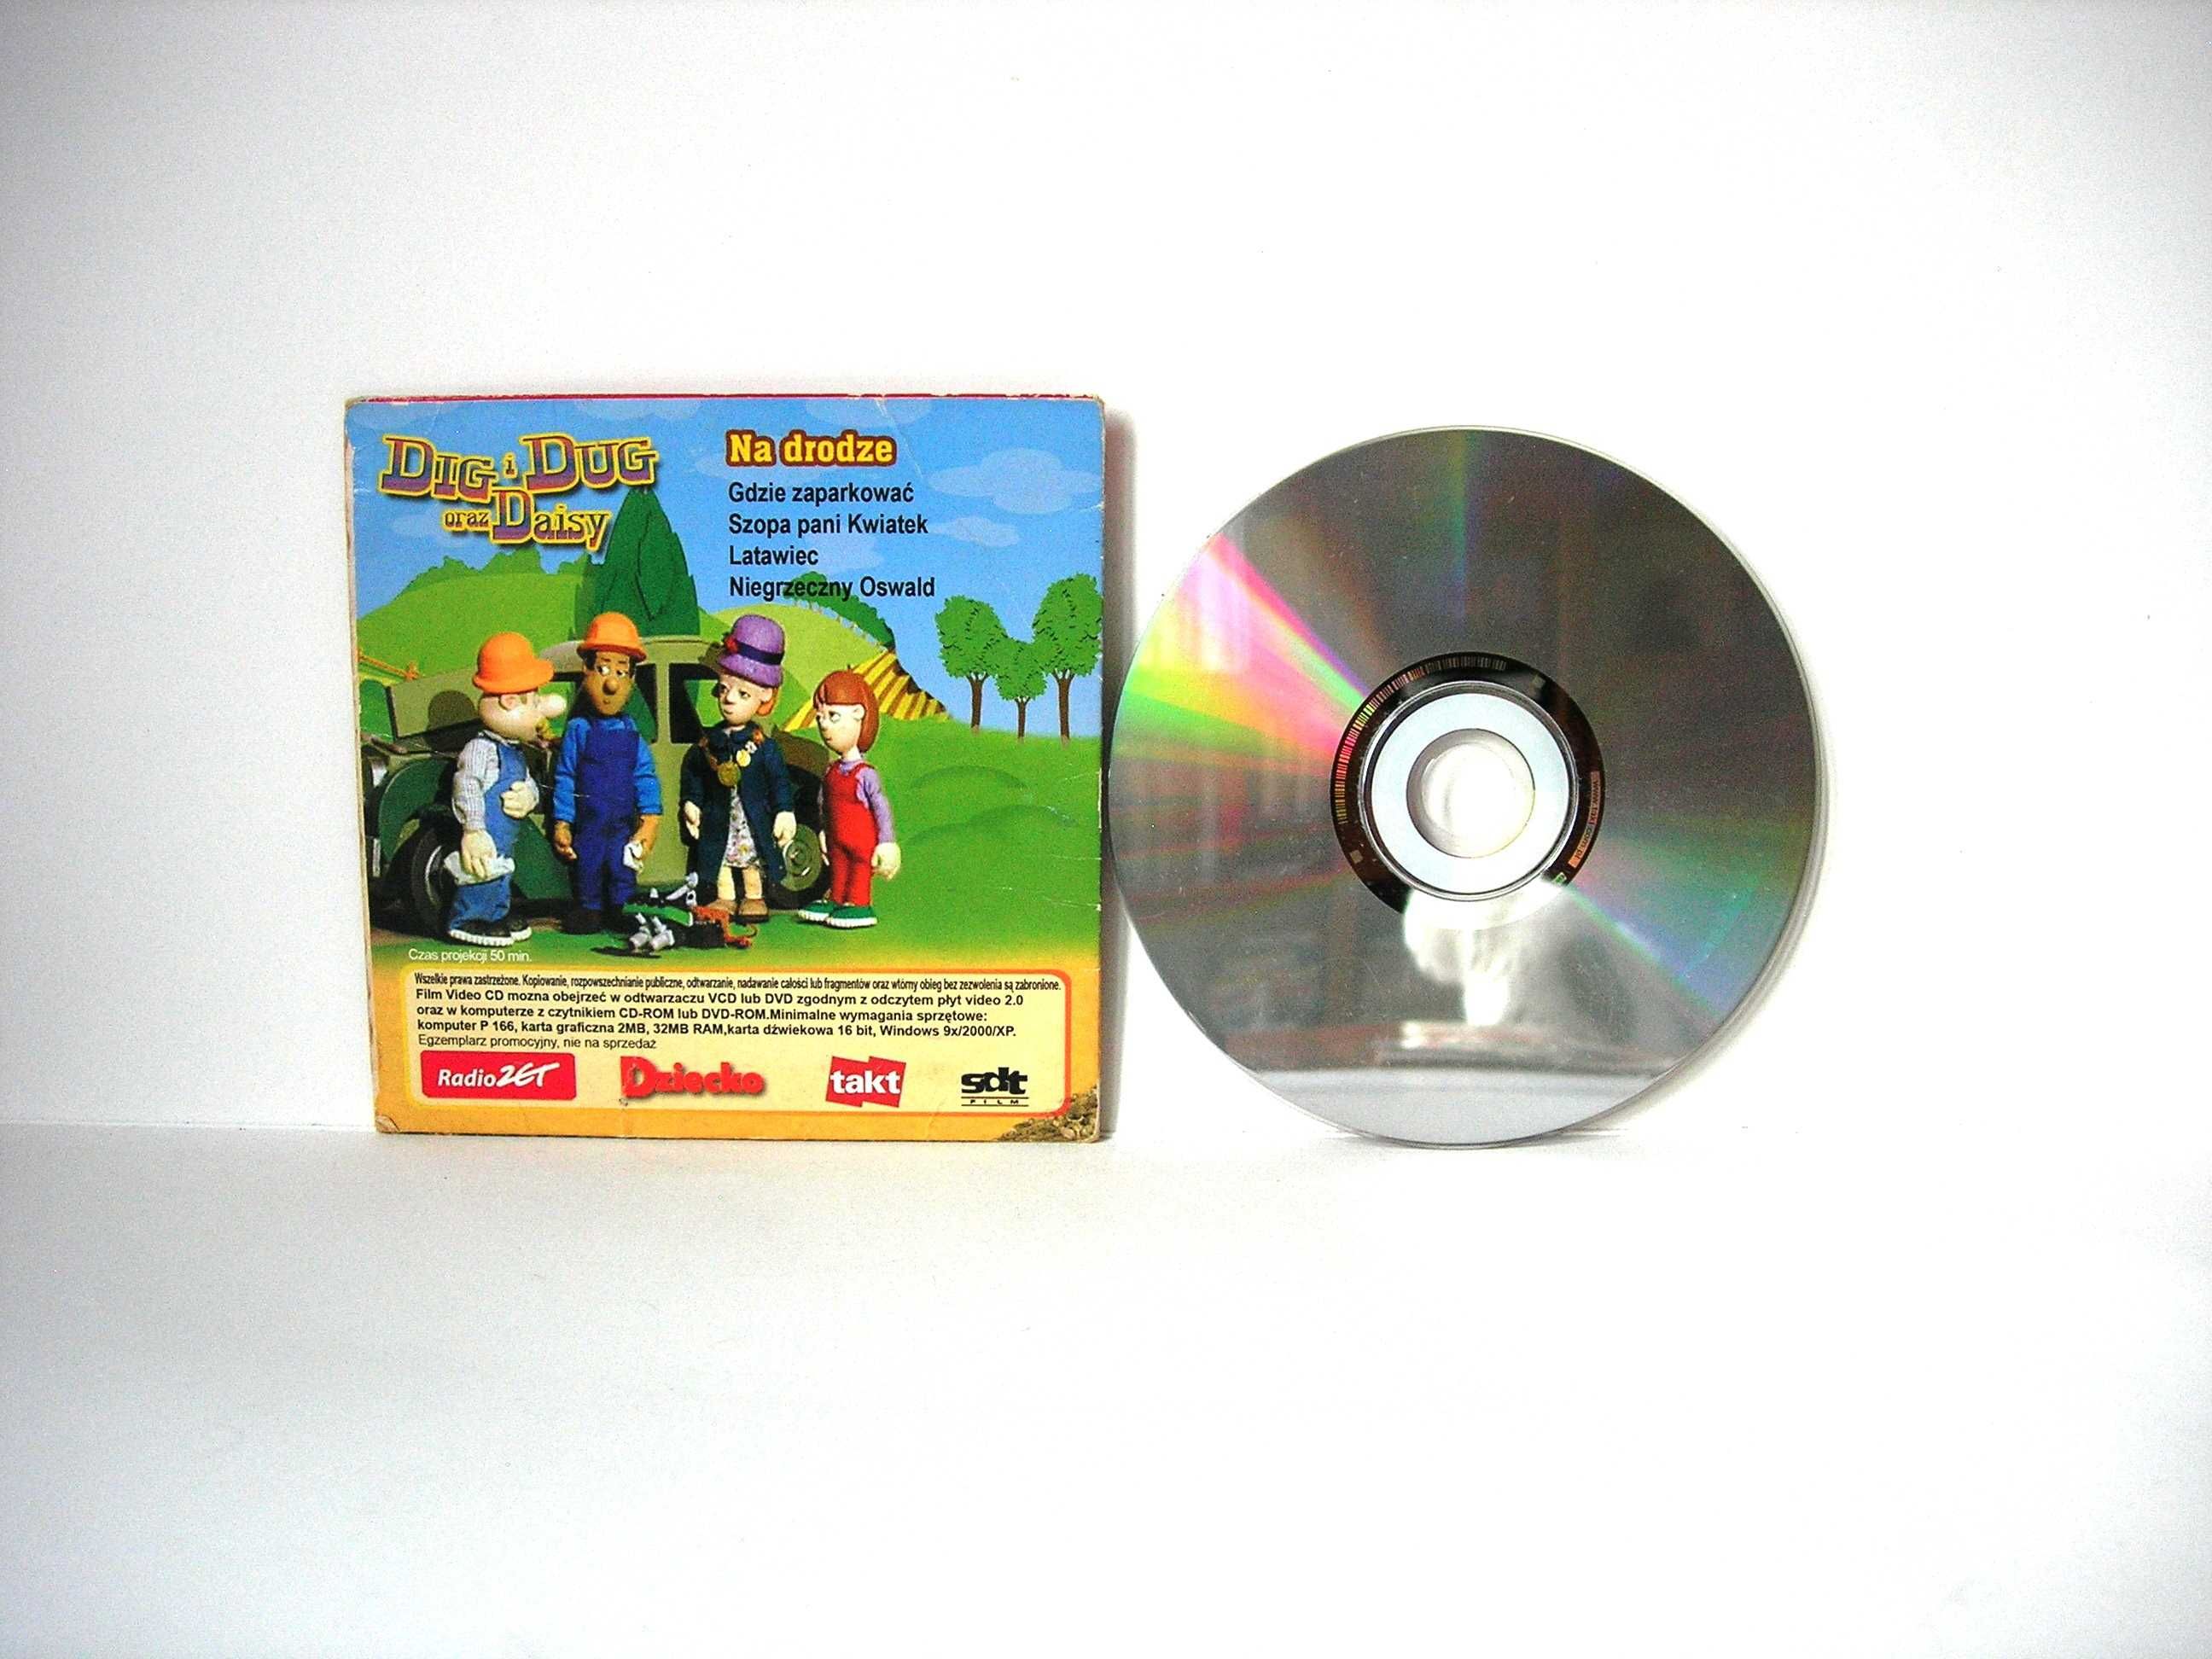 "Dig i Dug oraz Daisy na drodze" bajka CD Video Fliks Films 1997